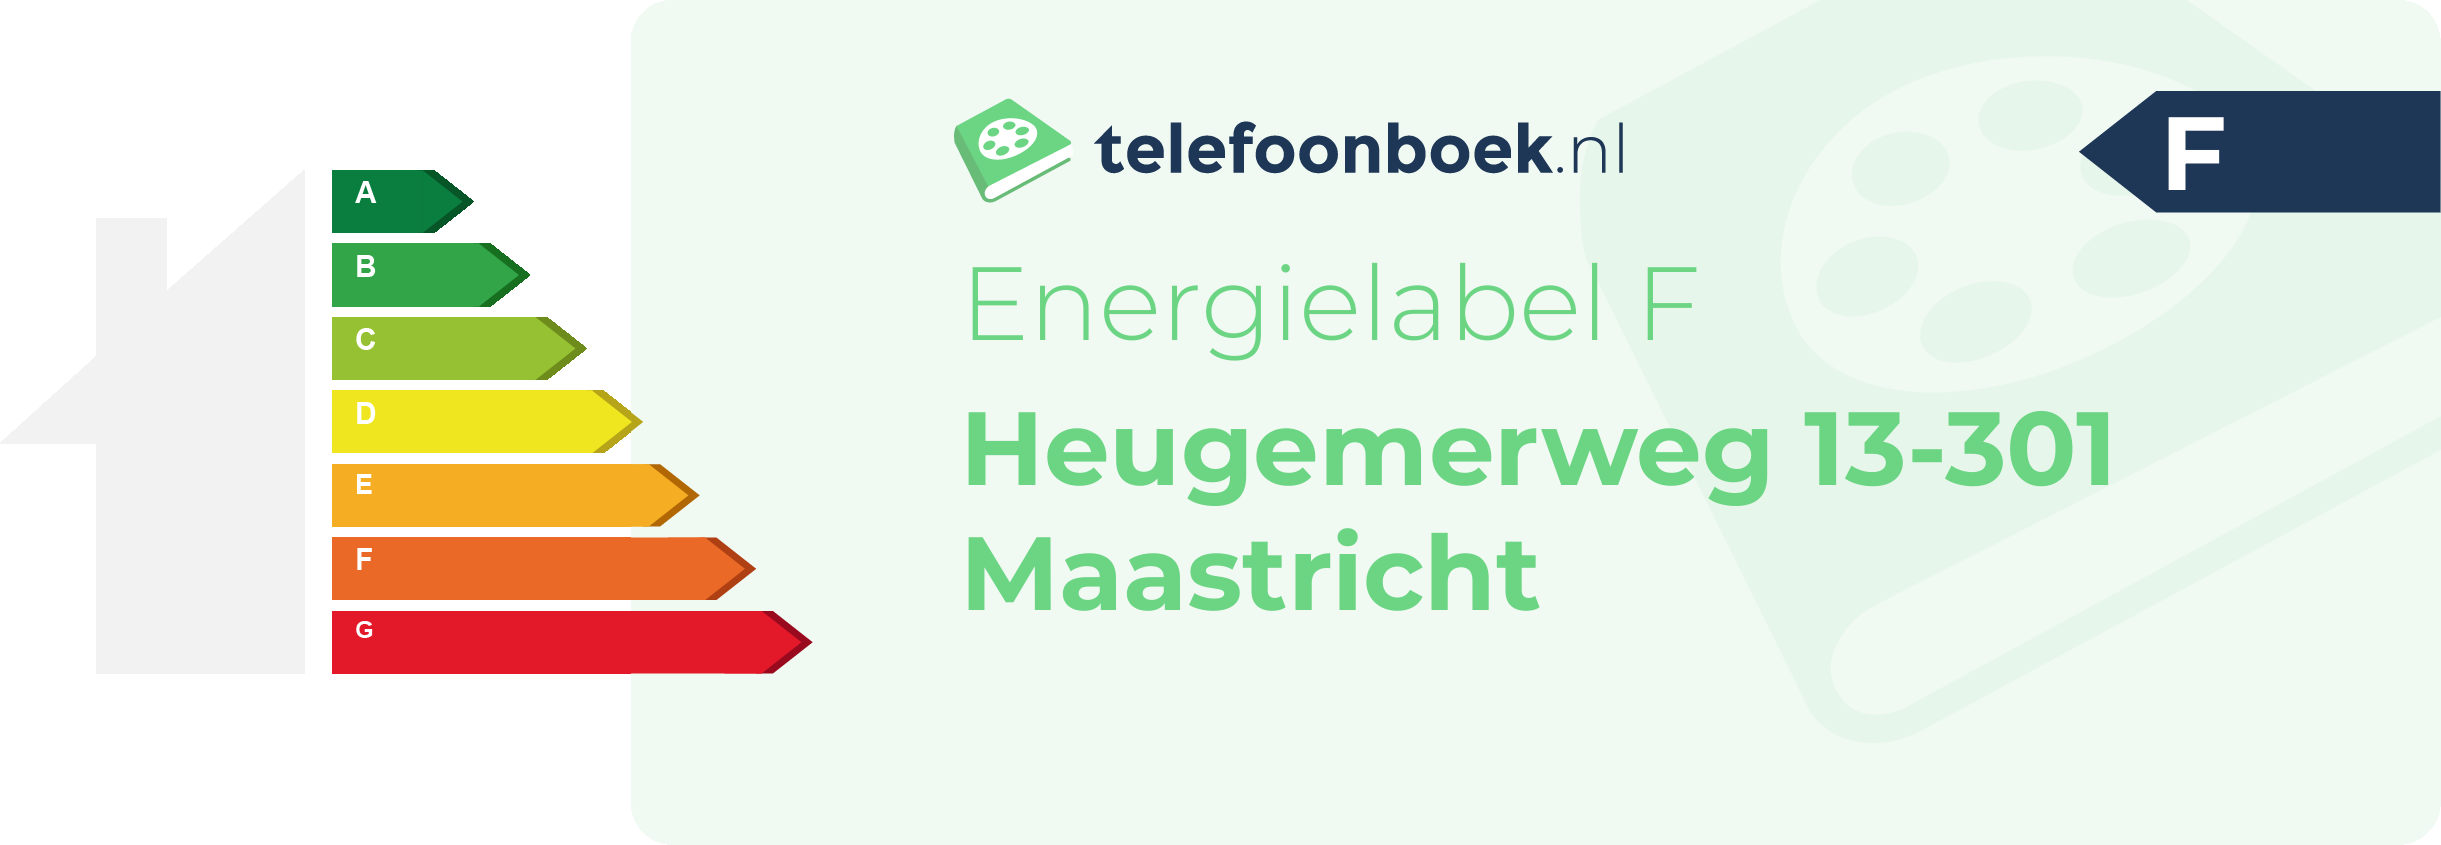 Energielabel Heugemerweg 13-301 Maastricht